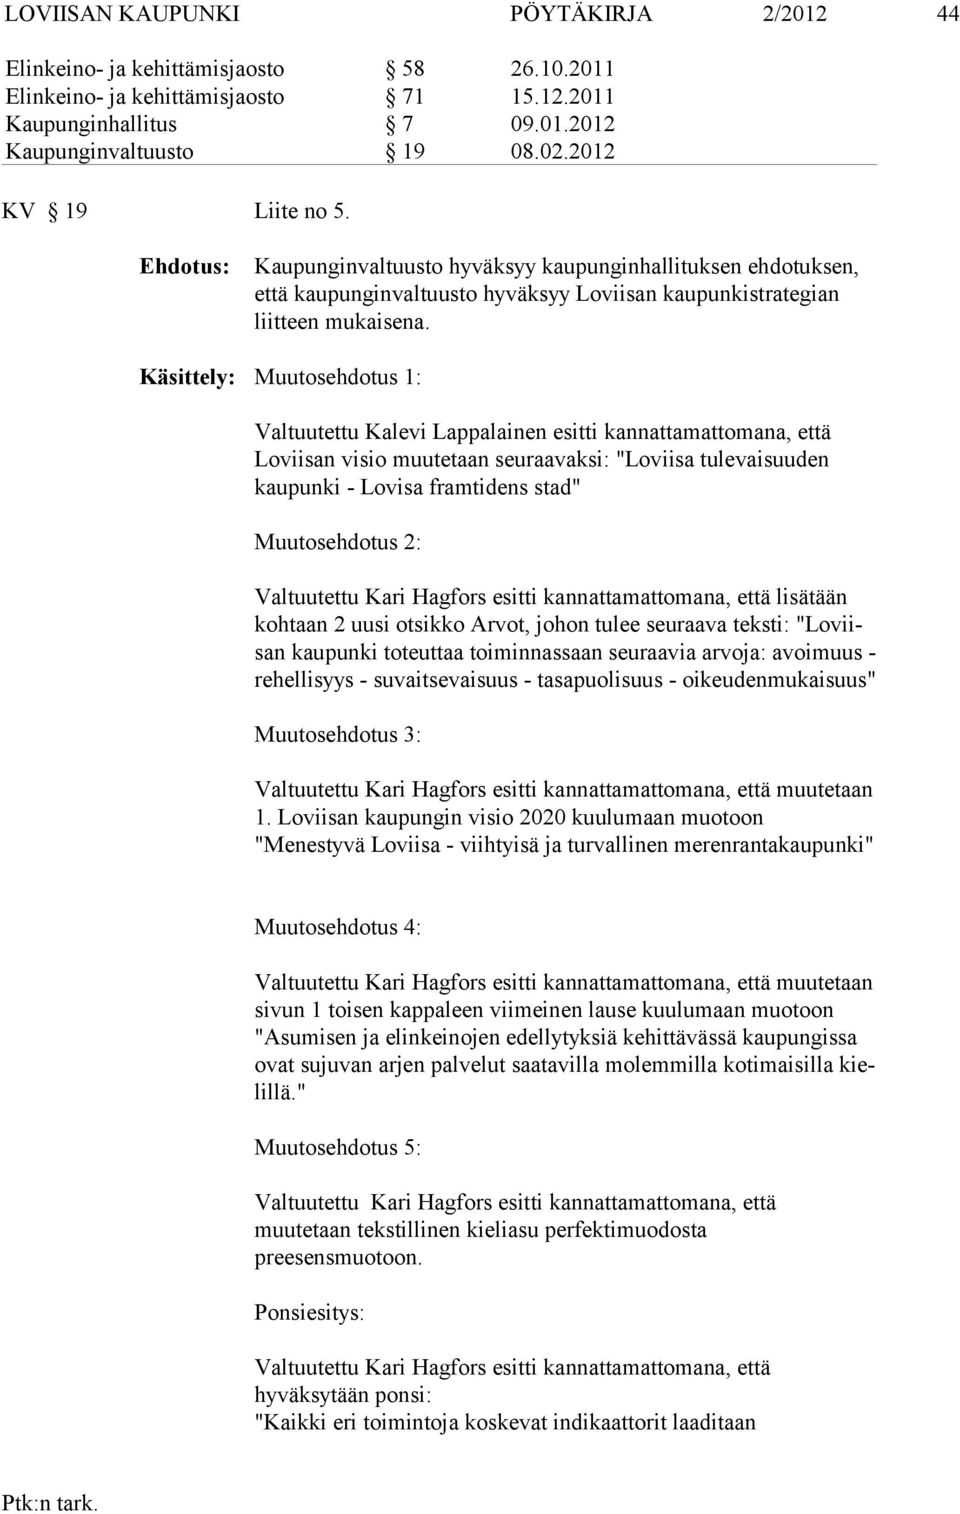 Käsittely: Muutosehdotus 1: Valtuutettu Kalevi Lappalainen esitti kannattamattomana, että Loviisan vi sio muutetaan seuraavaksi: "Loviisa tulevaisuuden kaupunki - Lovisa fram tidens stad"